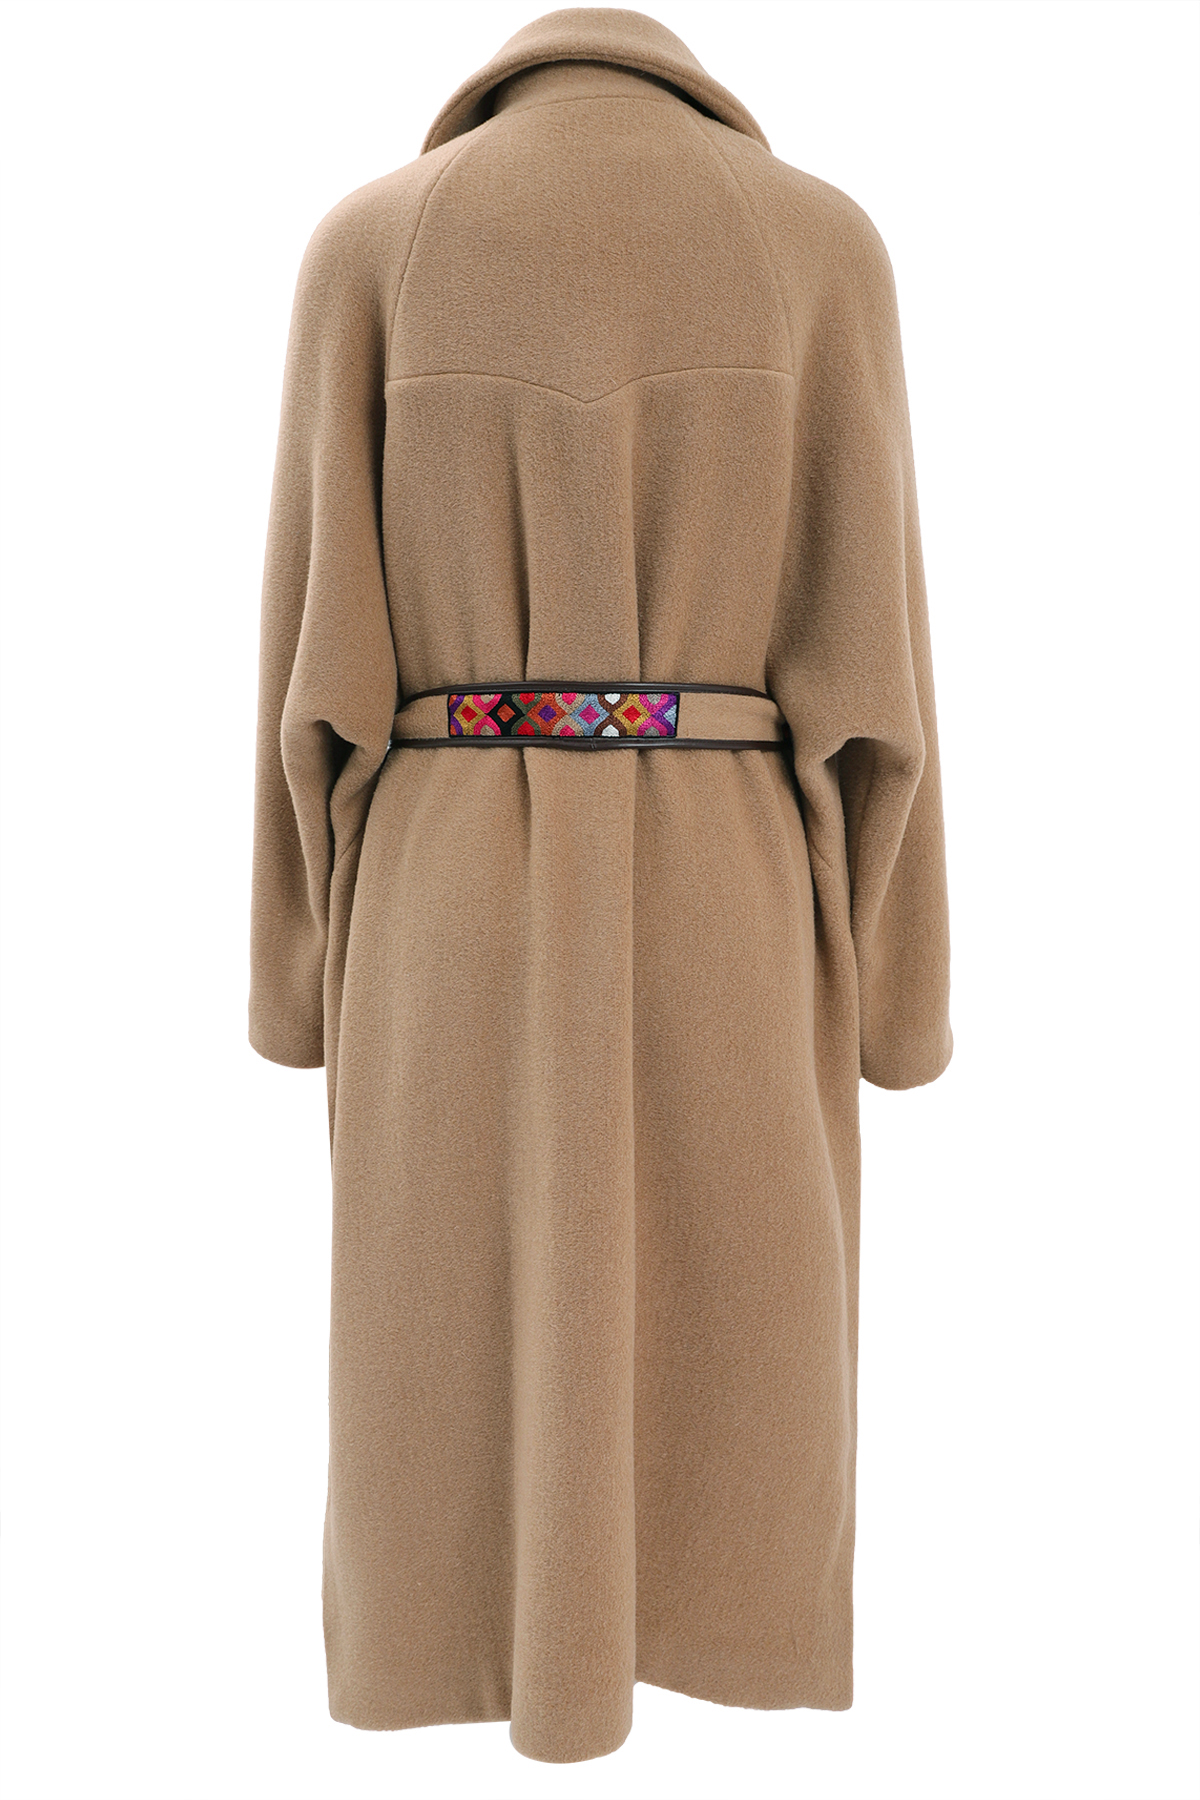 BAZAR Wolle mit Mantel | DELUXE